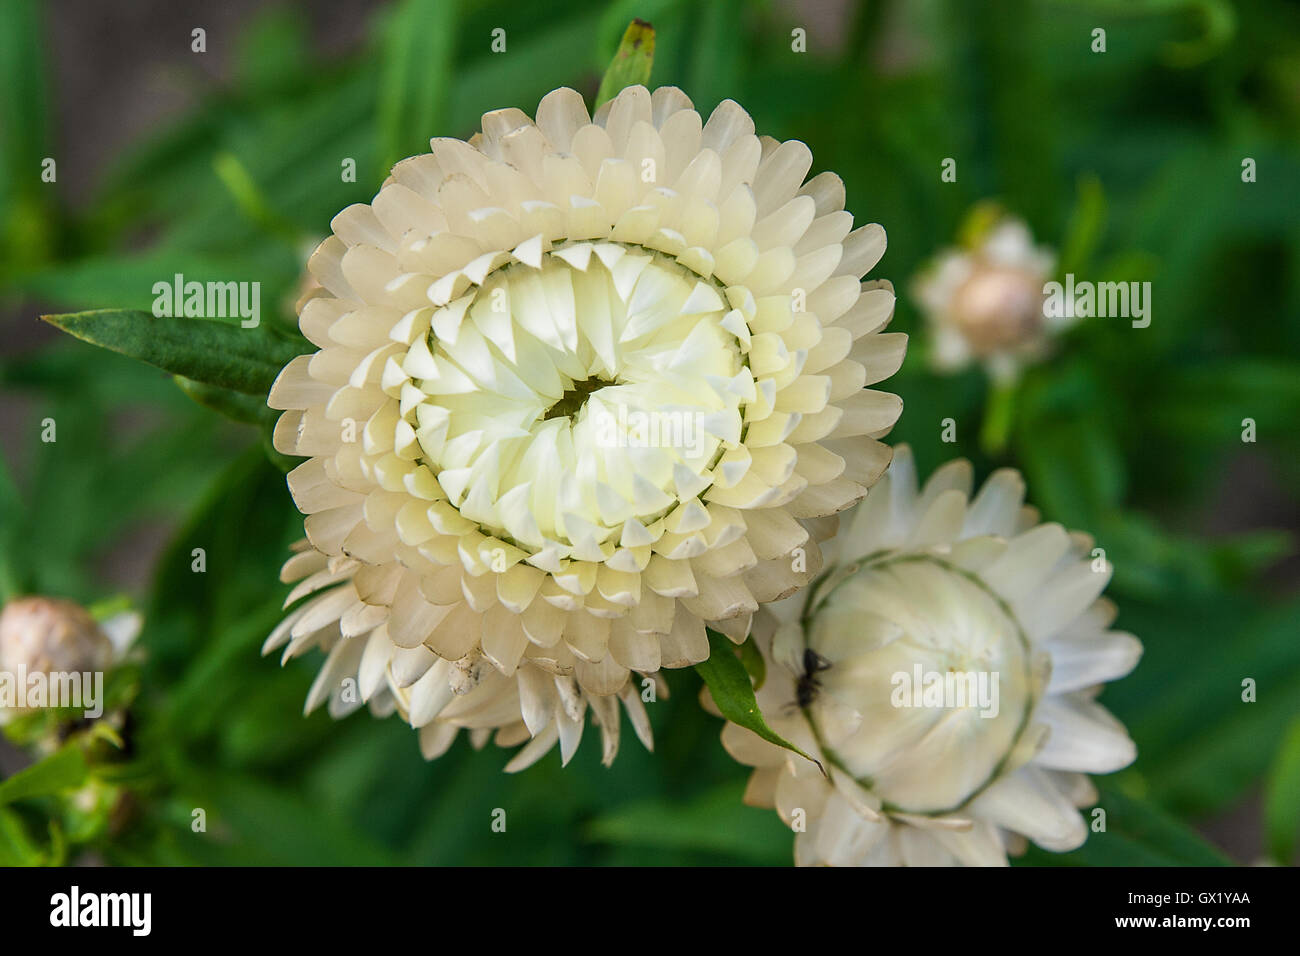 Helichrysum oder Stroh Blume im Garten. Streublumen, wissenschaftlicher Name ist Helichrysum Bracteatum. Stockfoto